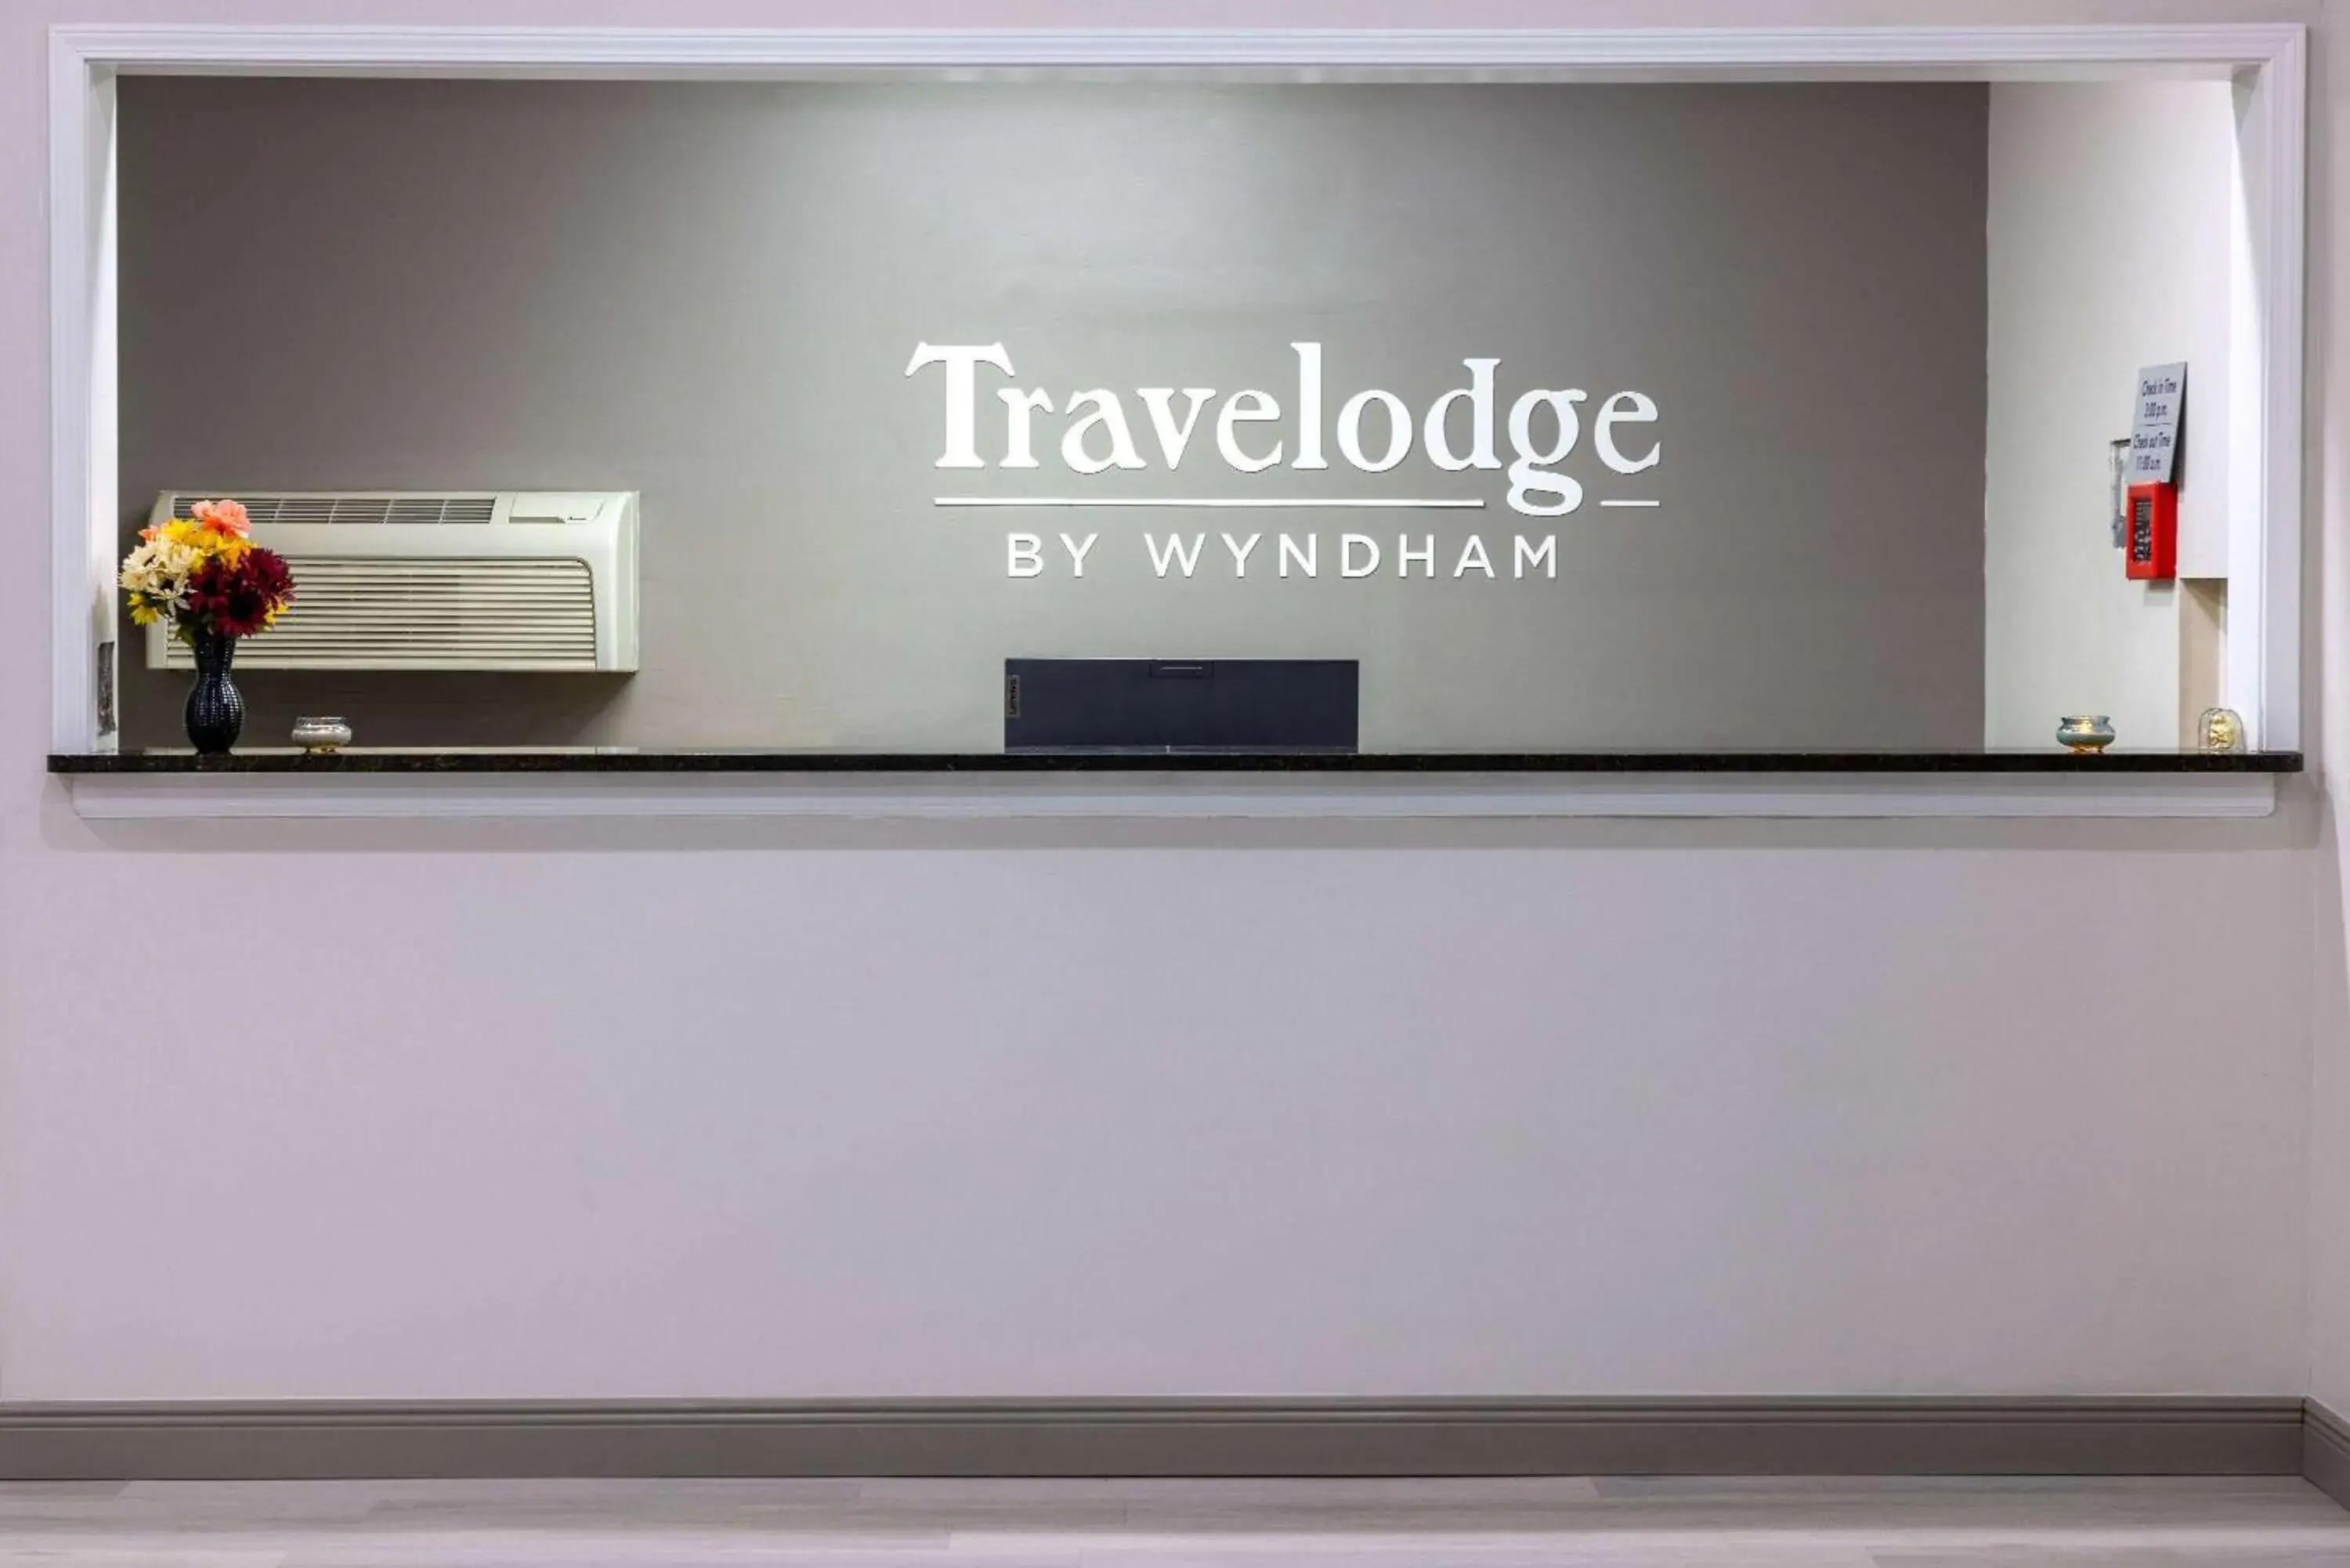 Lobby or reception, Lobby/Reception in Travelodge by Wyndham Kingsland GA